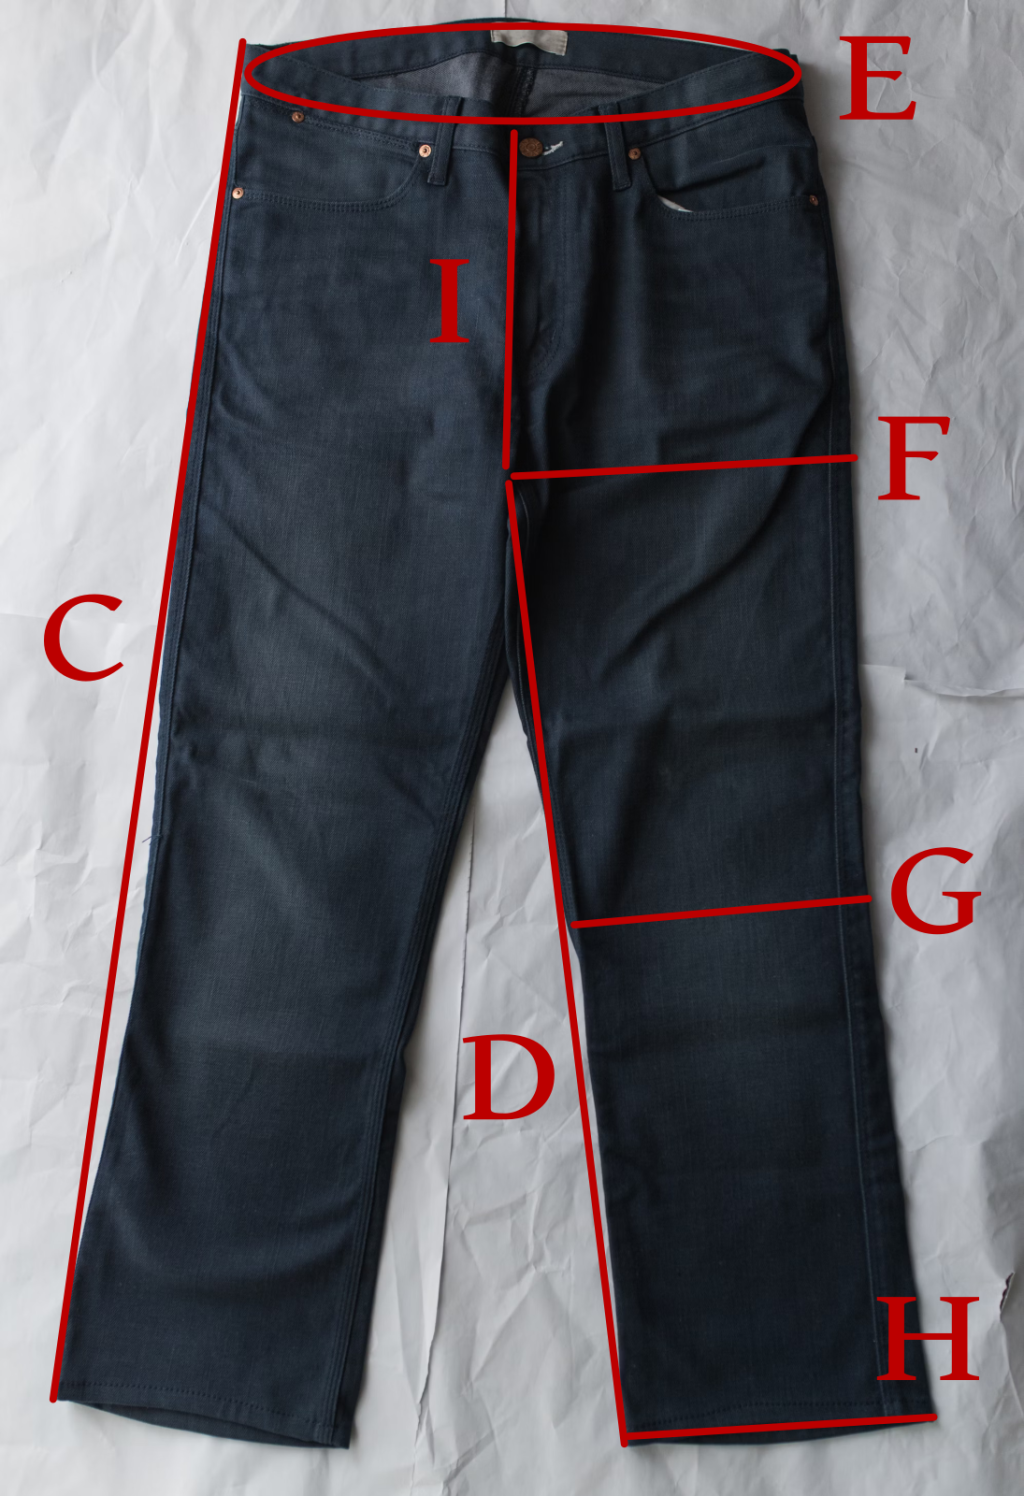 Jeans measurements.